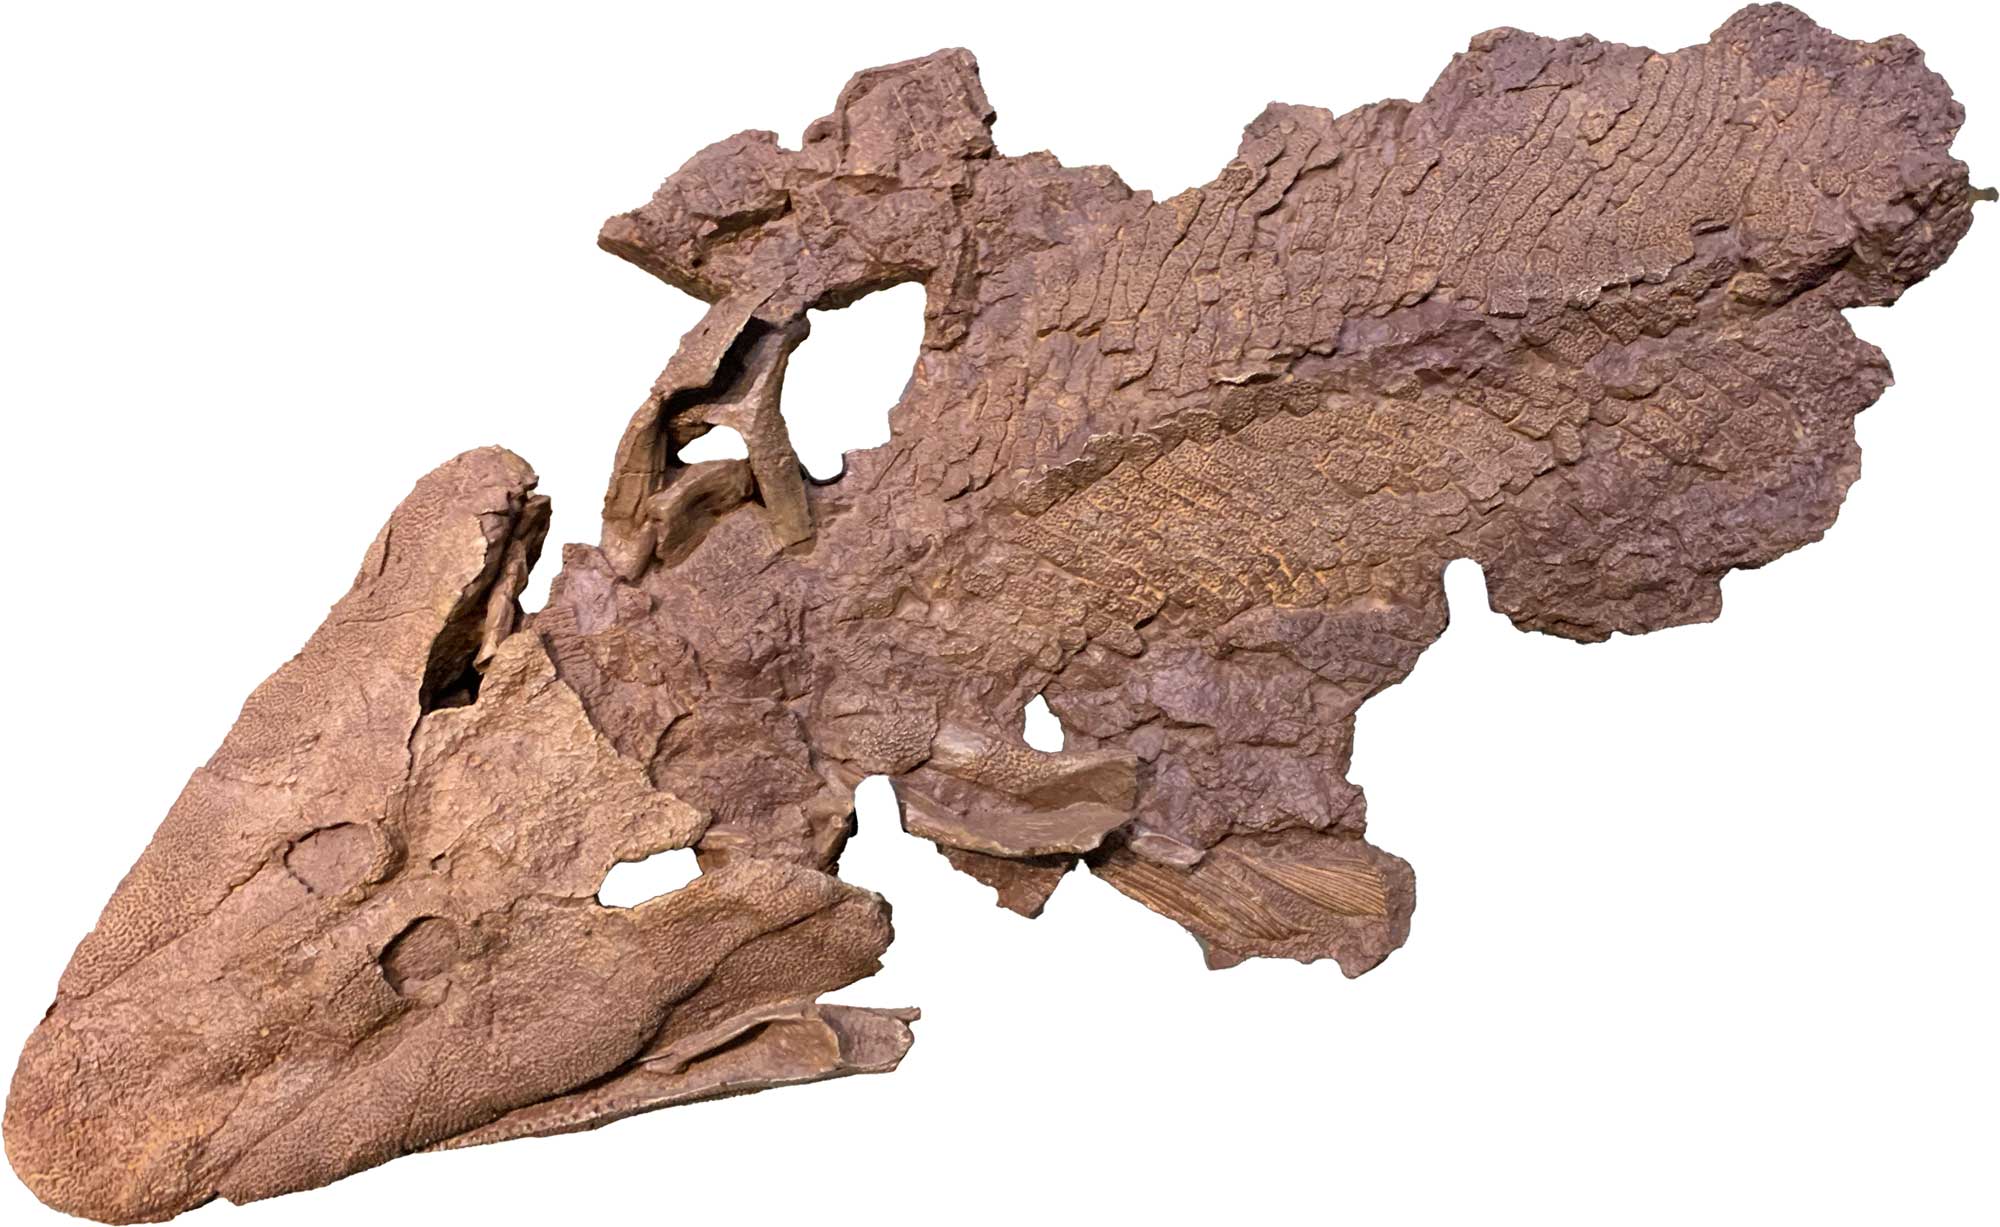 Photograph of the fossil Tiktaalik.